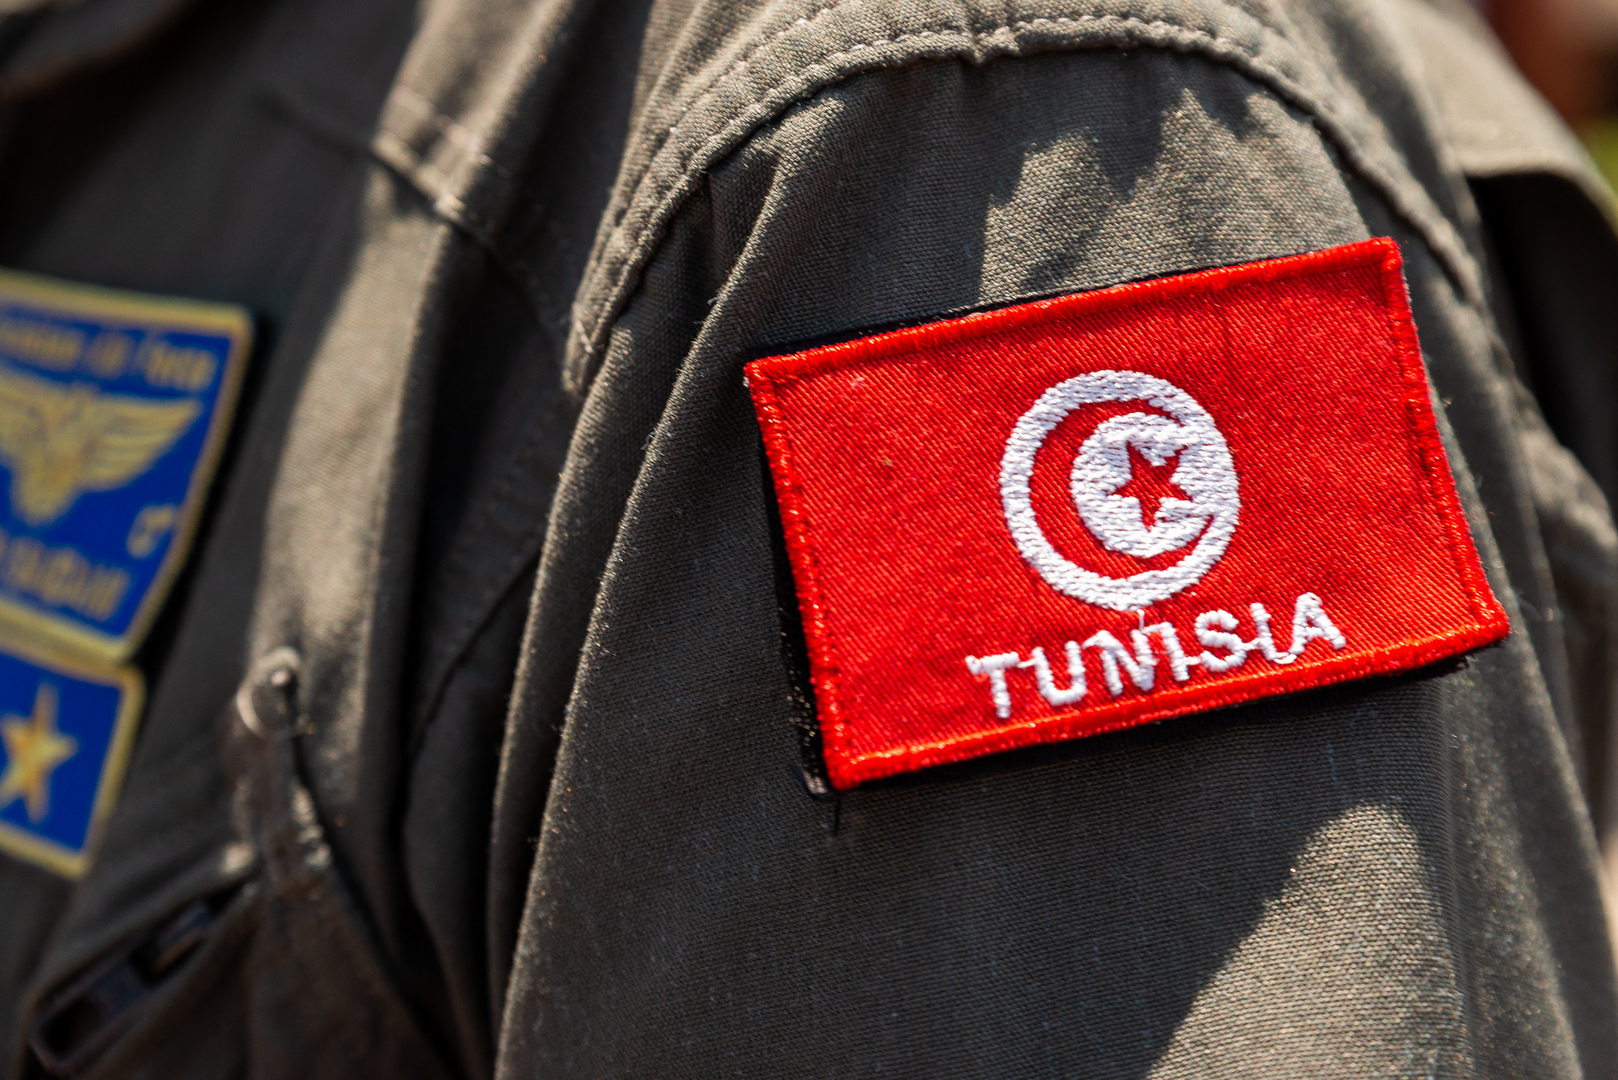 الأمن التونسي يوقف أحد أخطر عناصر المافيا المطلوبين في إيطاليا